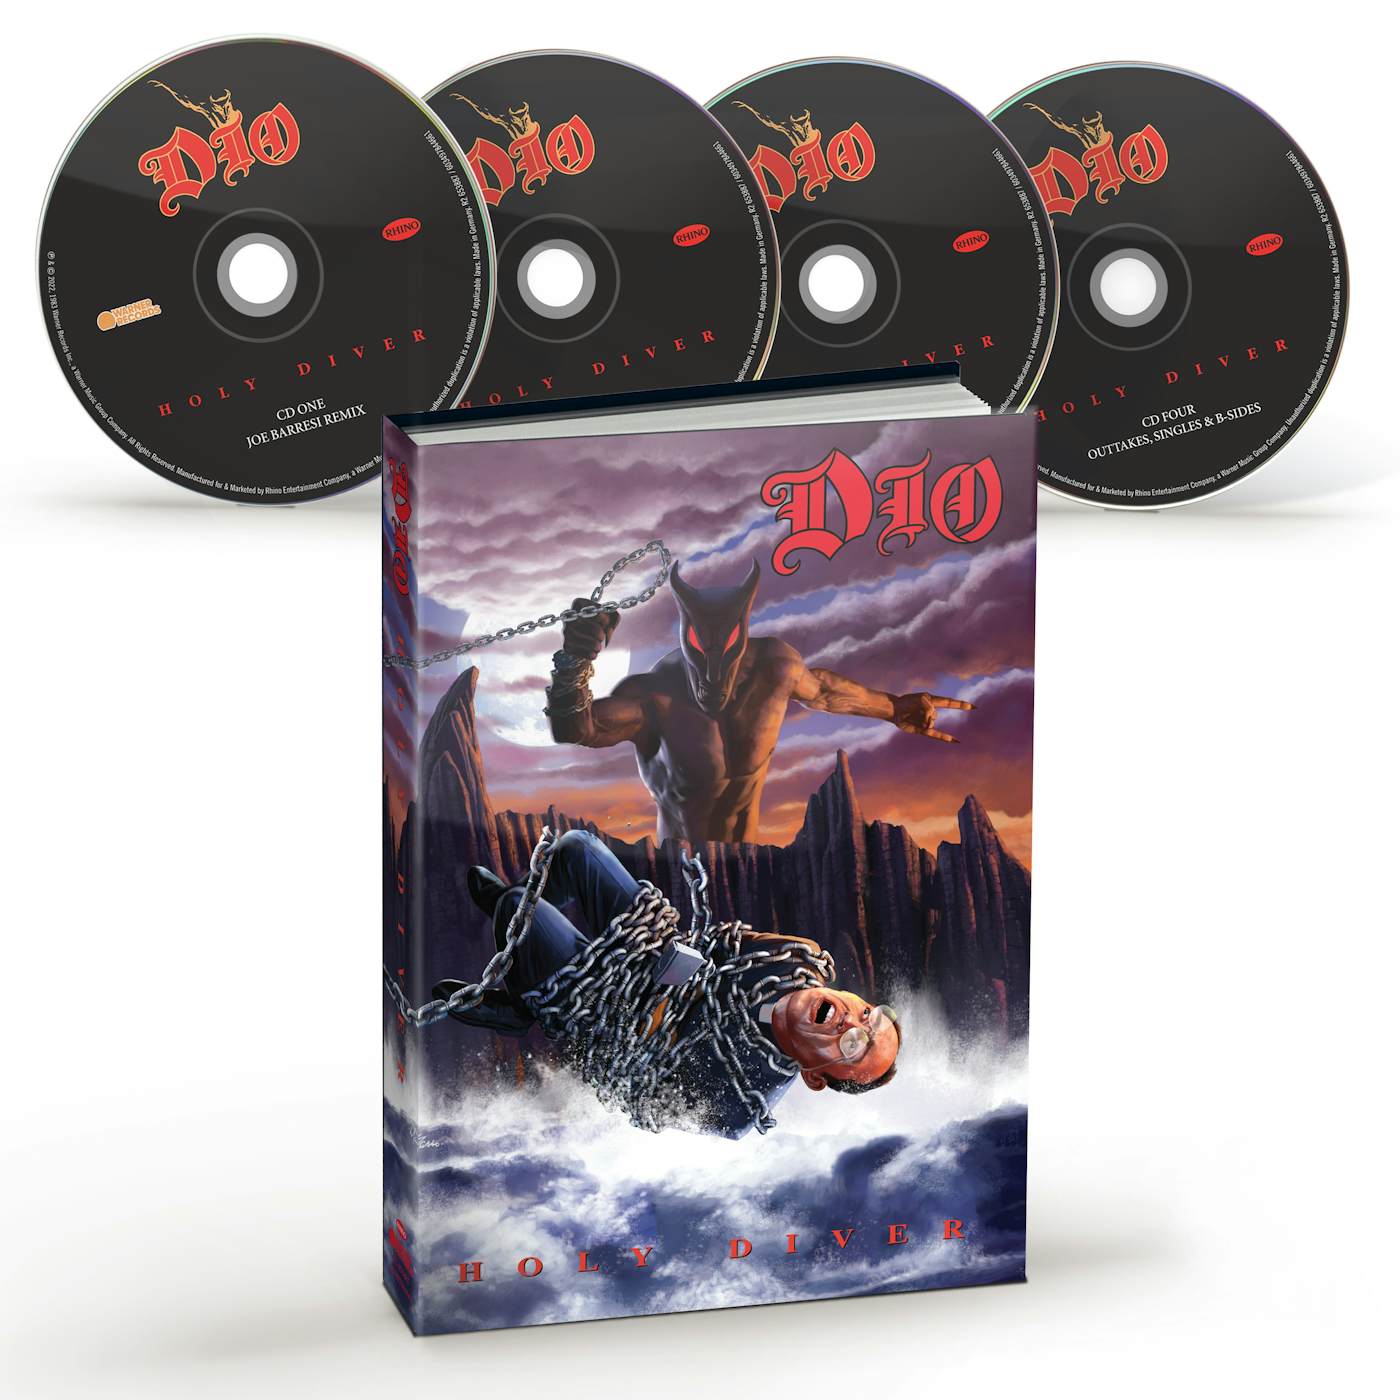 Buy Record of Ragnarok DVD - $14.99 at